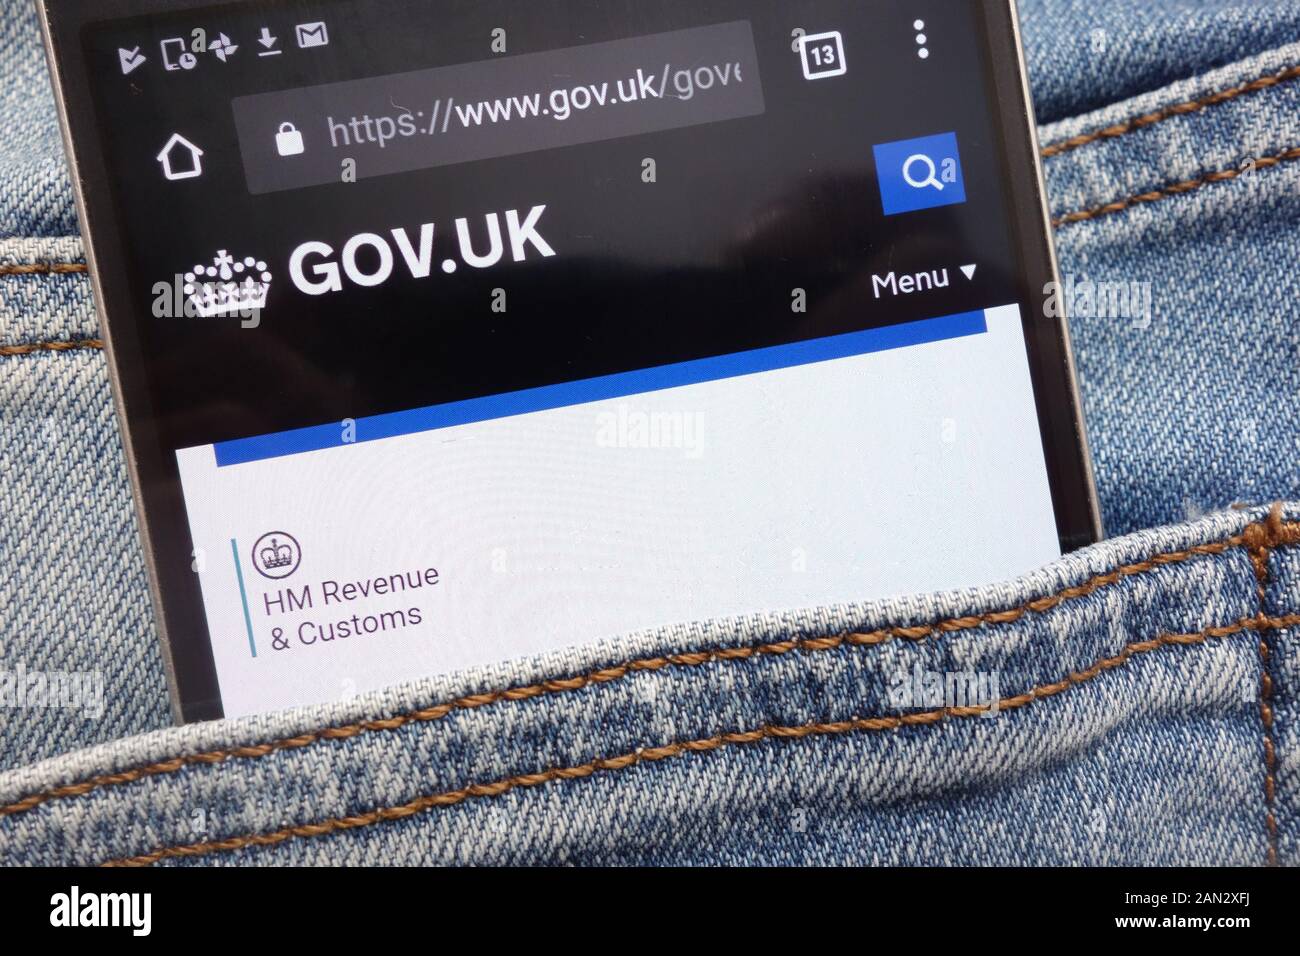 Gov.uk site web affiché sur smartphone caché dans la poche de jeans Banque D'Images